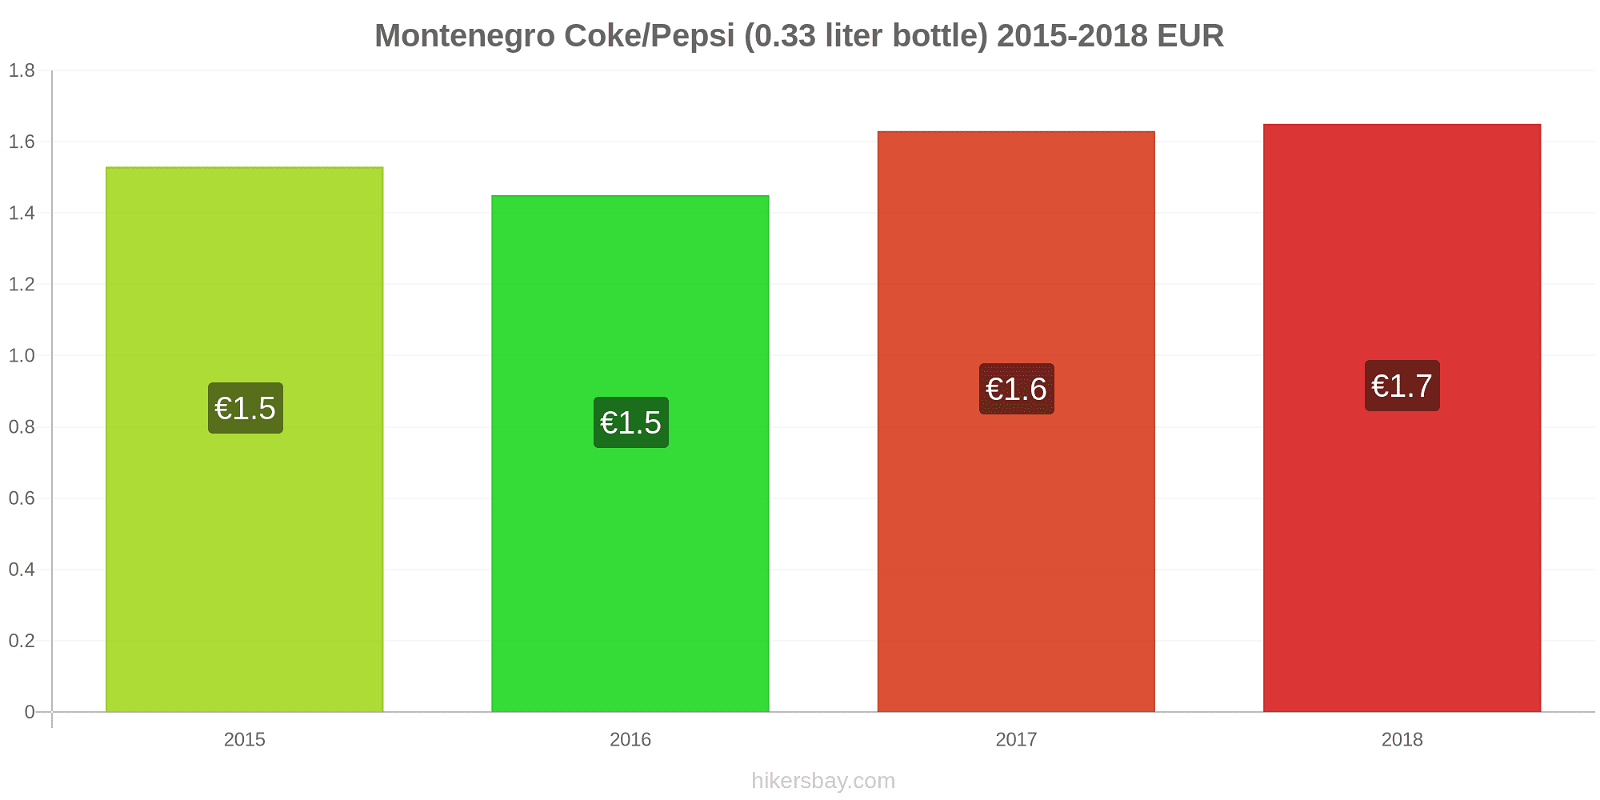 Montenegro price changes Coke/Pepsi (0.33 liter bottle) hikersbay.com